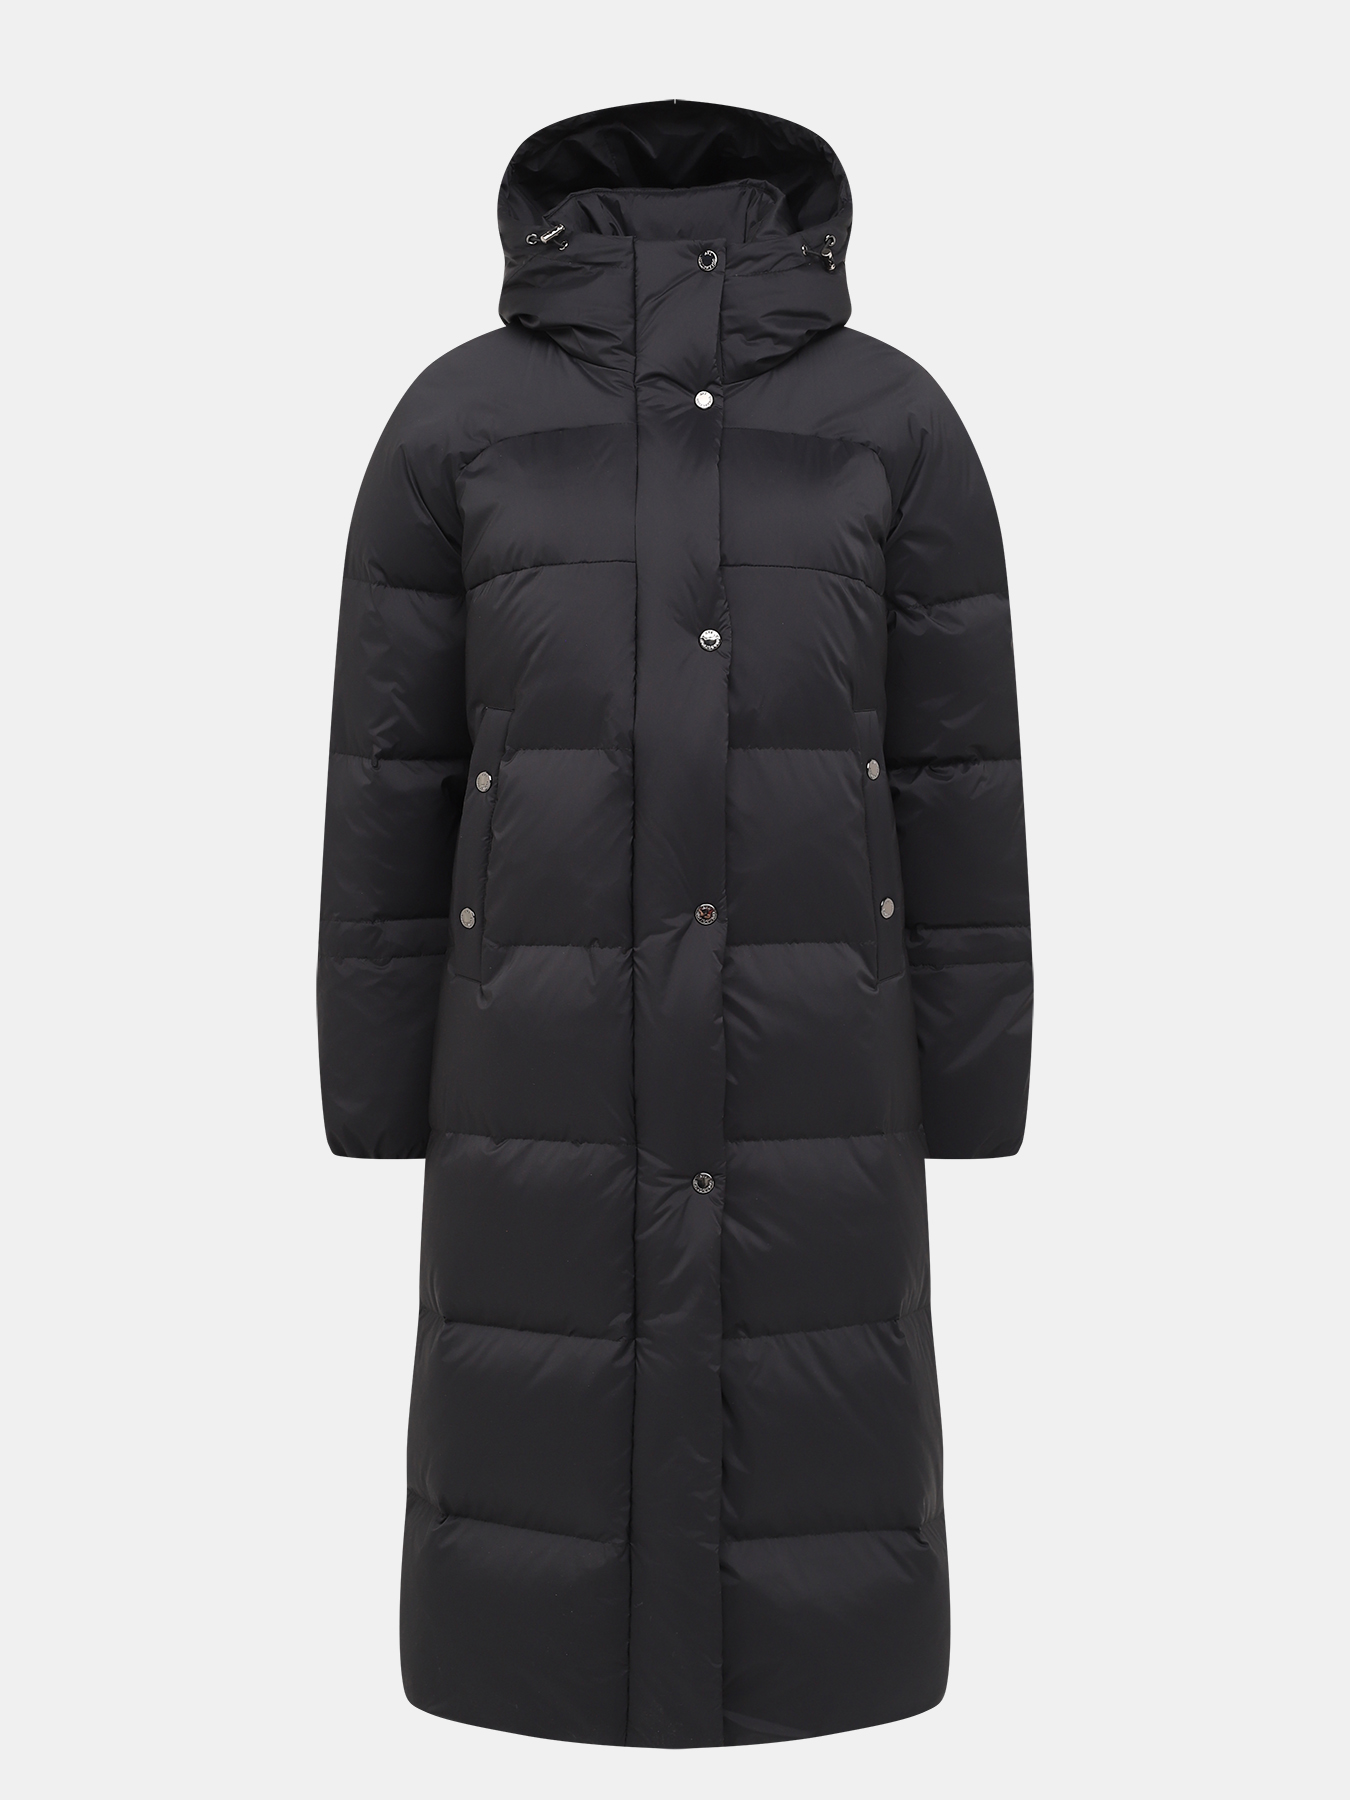 Пальто зимнее AVI 433511-020, цвет темно-серый, размер 44